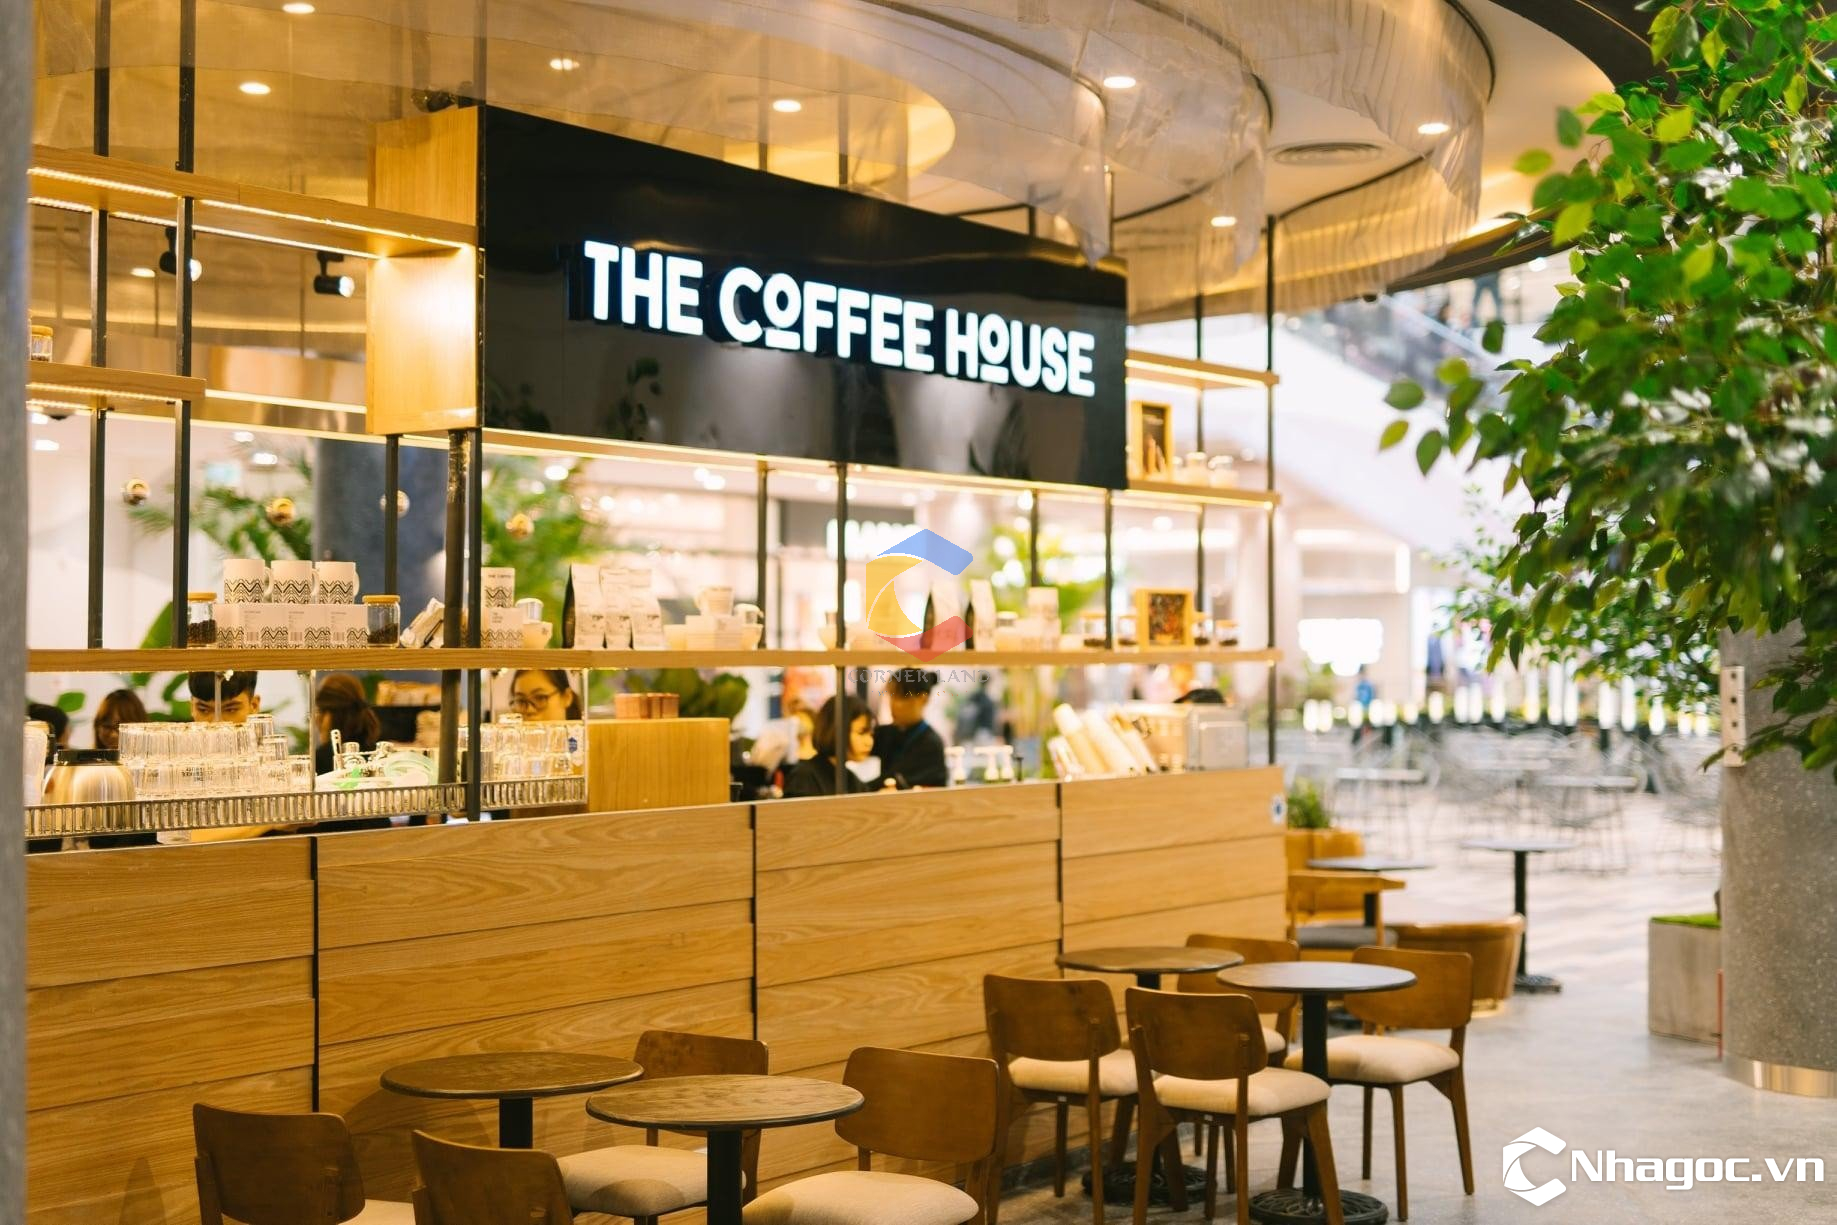 'Rót' 5 triệu USD vào Seedcom - ngân hàng Thái Kasikornbank muốn tái cơ cấu chuỗi The Coffee House?